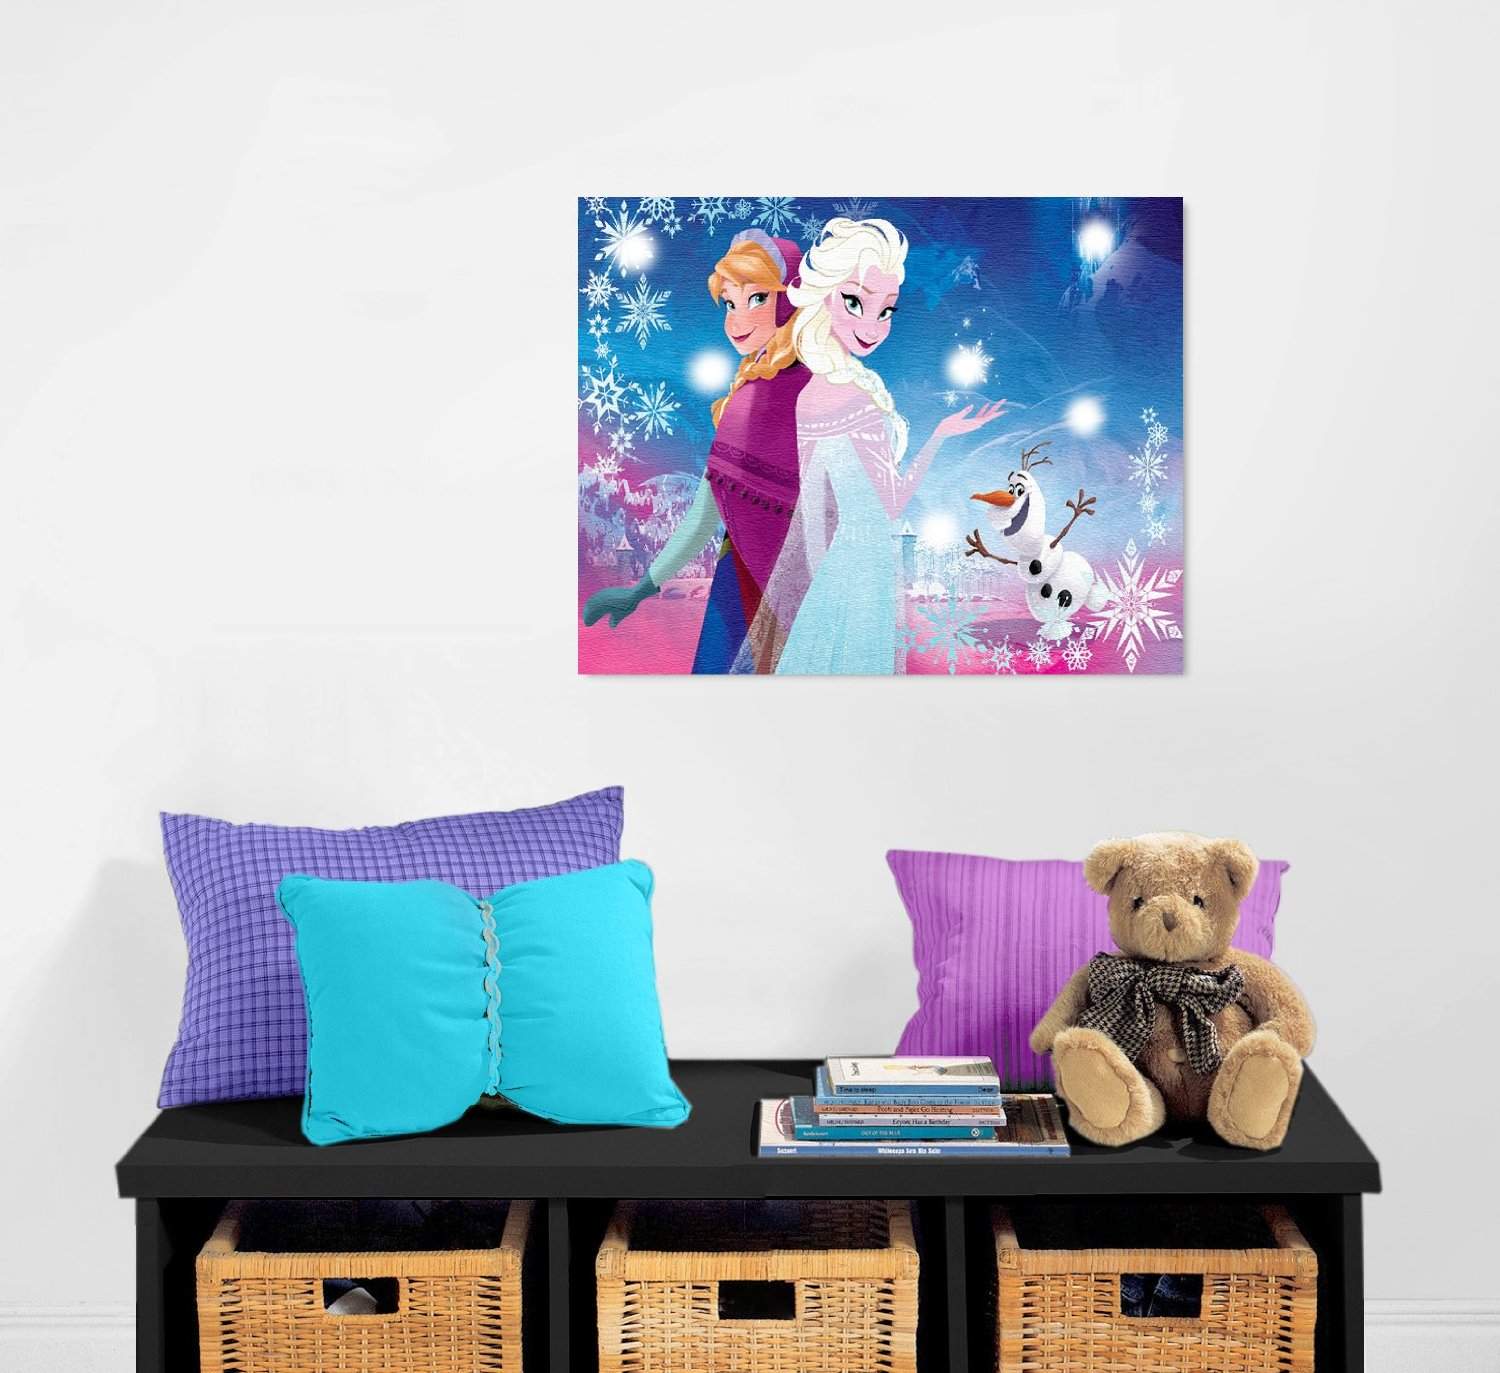 Disneys Frozen Bedroom Designs DIY Projects Craft Ideas How